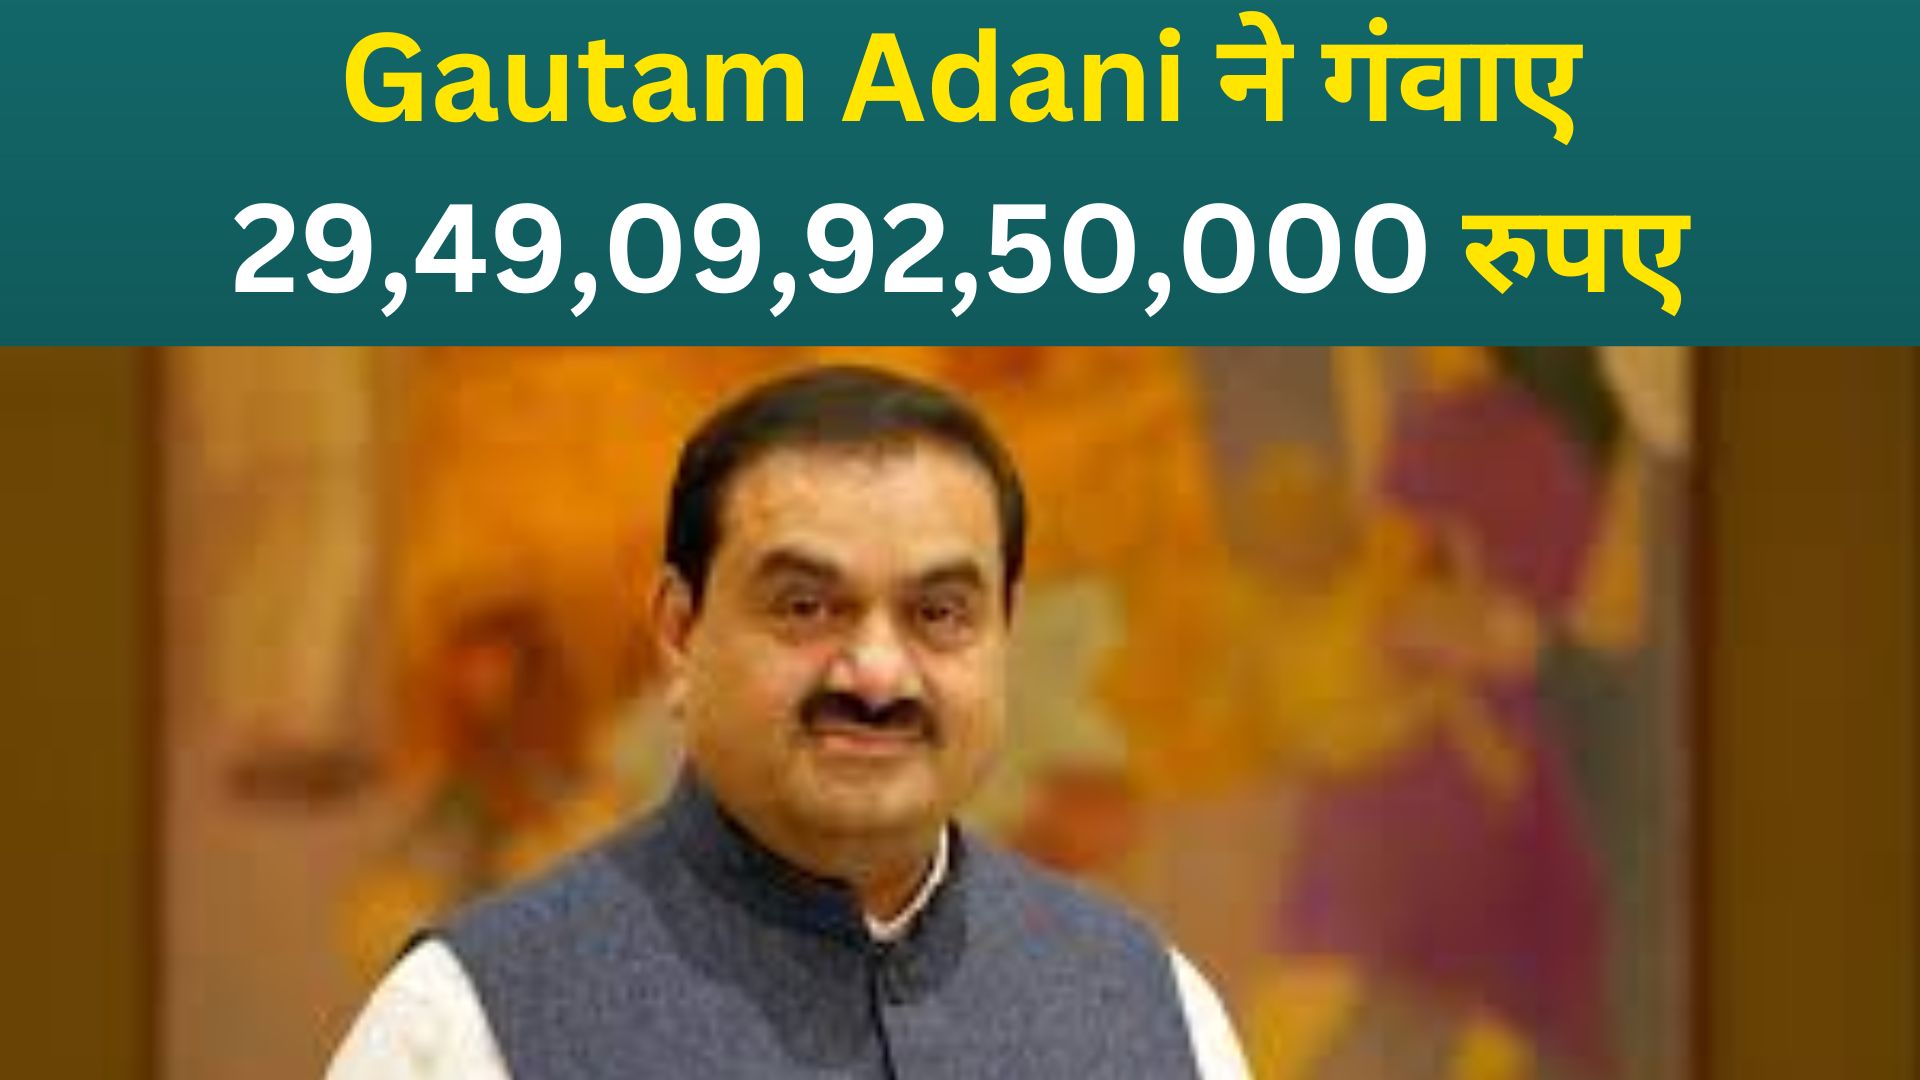 Gautam Adani दुनिया के टॉप-10 अमीरों की लिस्ट से बाहर, गंवाए 29,49,09,92,50,000 रुपए